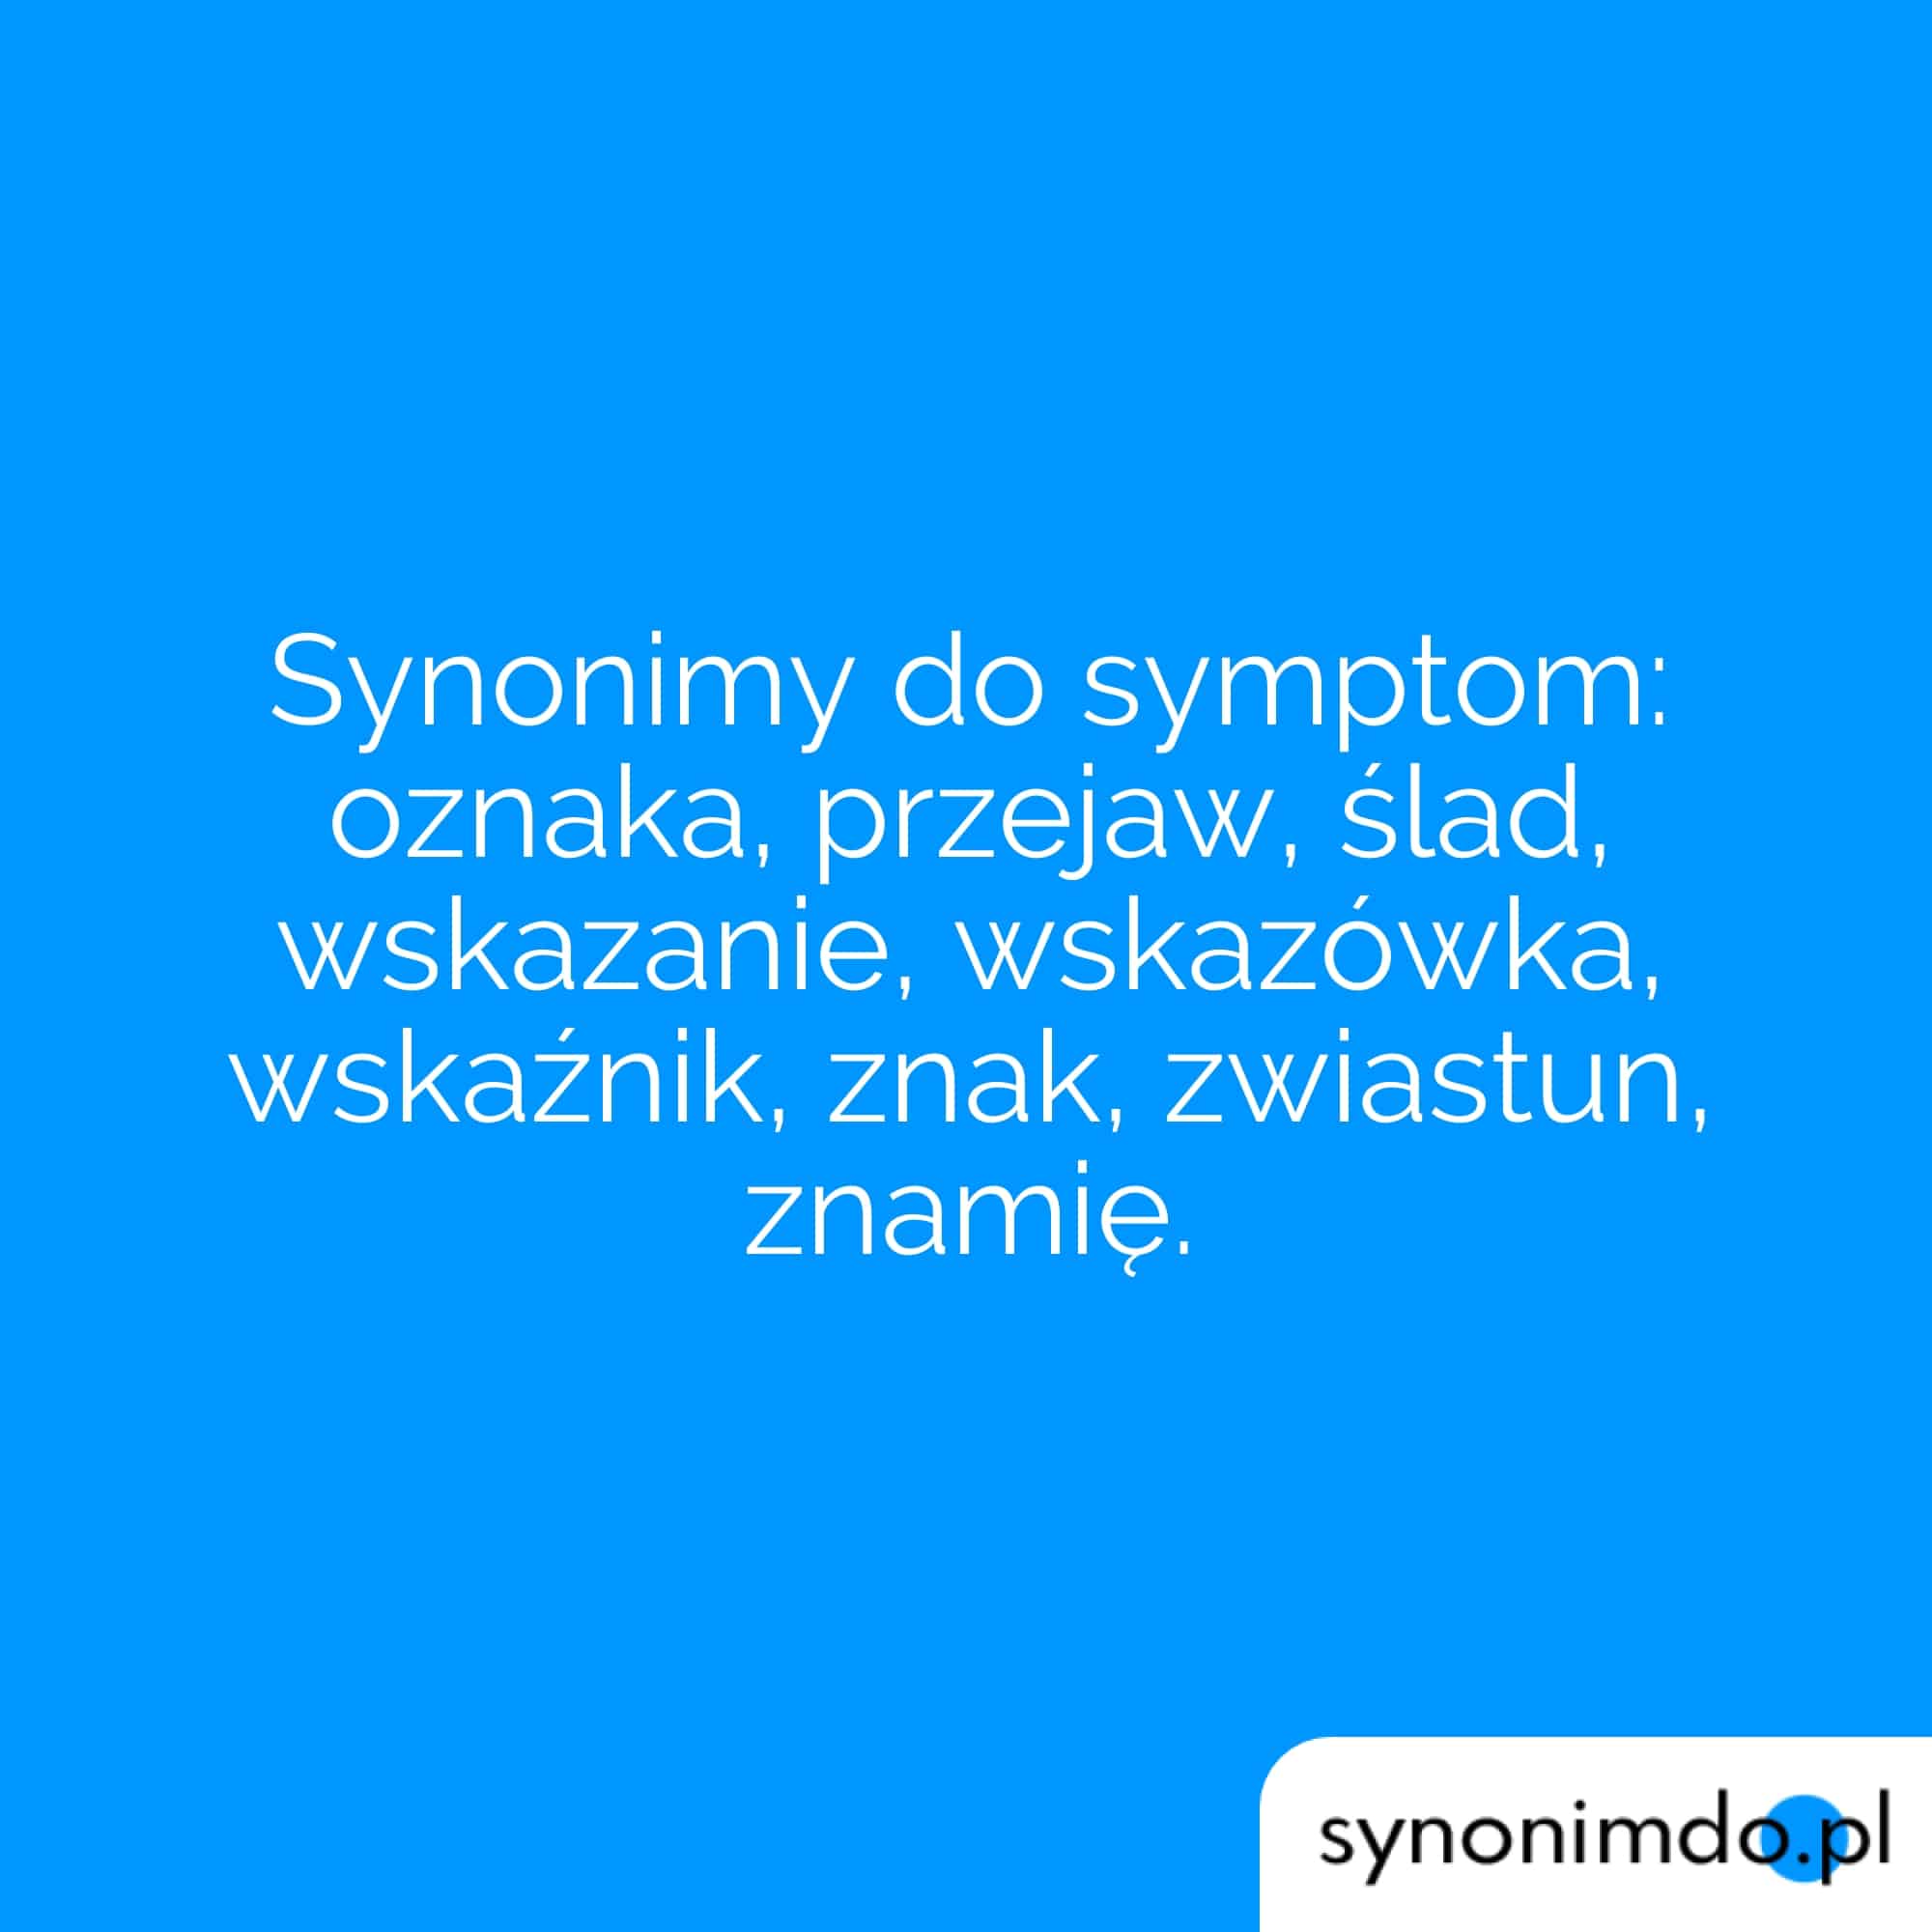 symptom